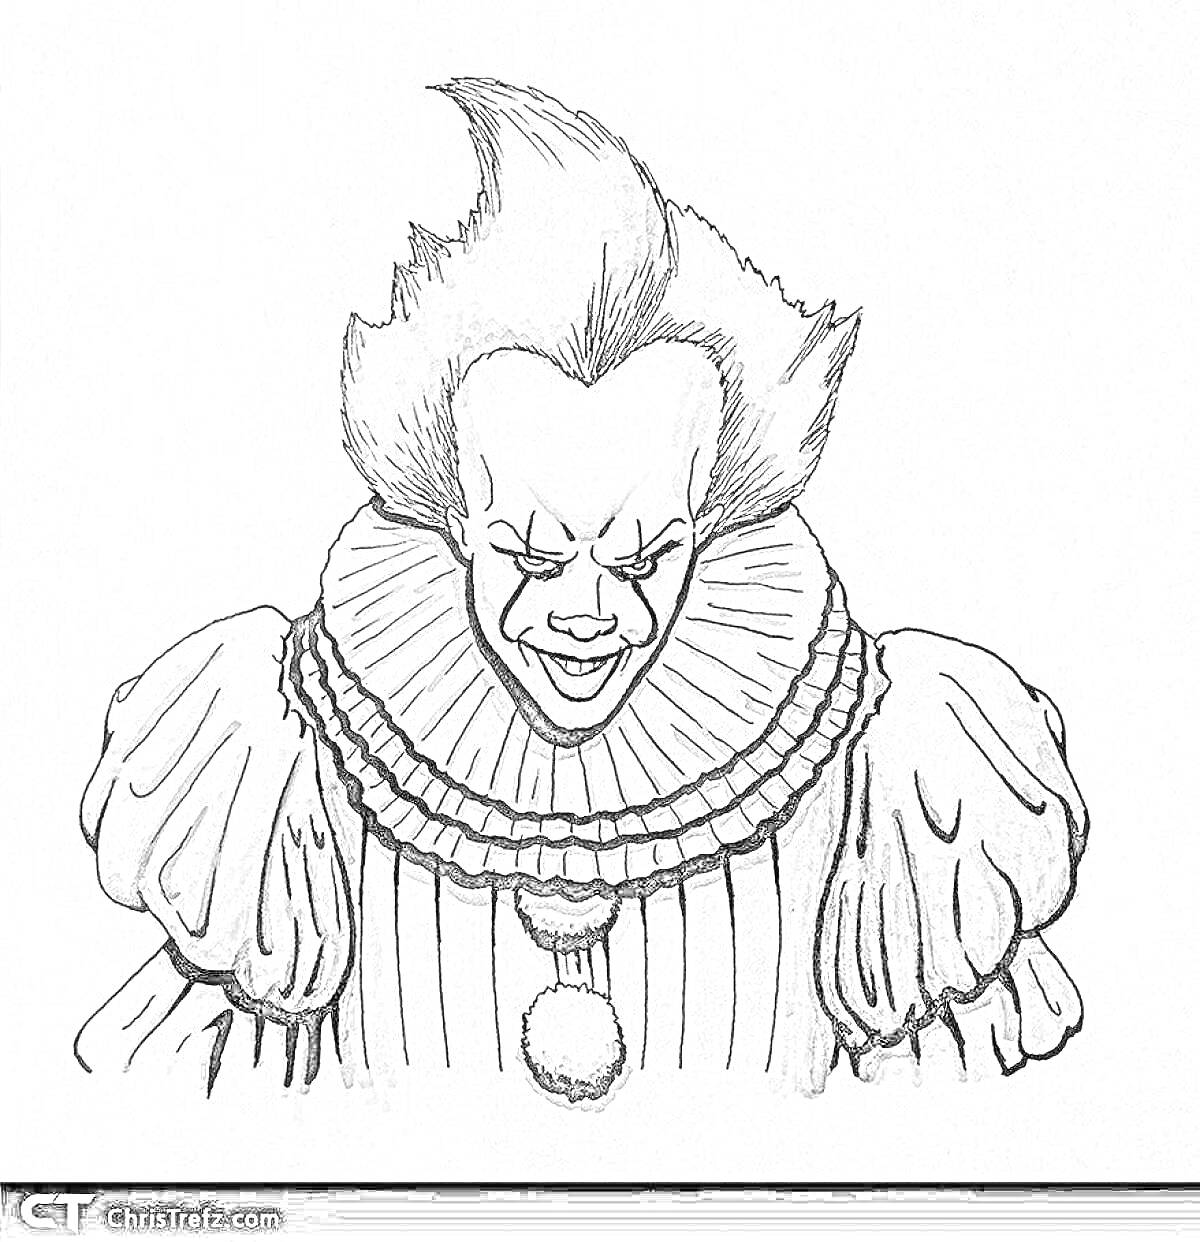 Раскраска Пеннивайз с клоунским костюмом и характерным выражением лица